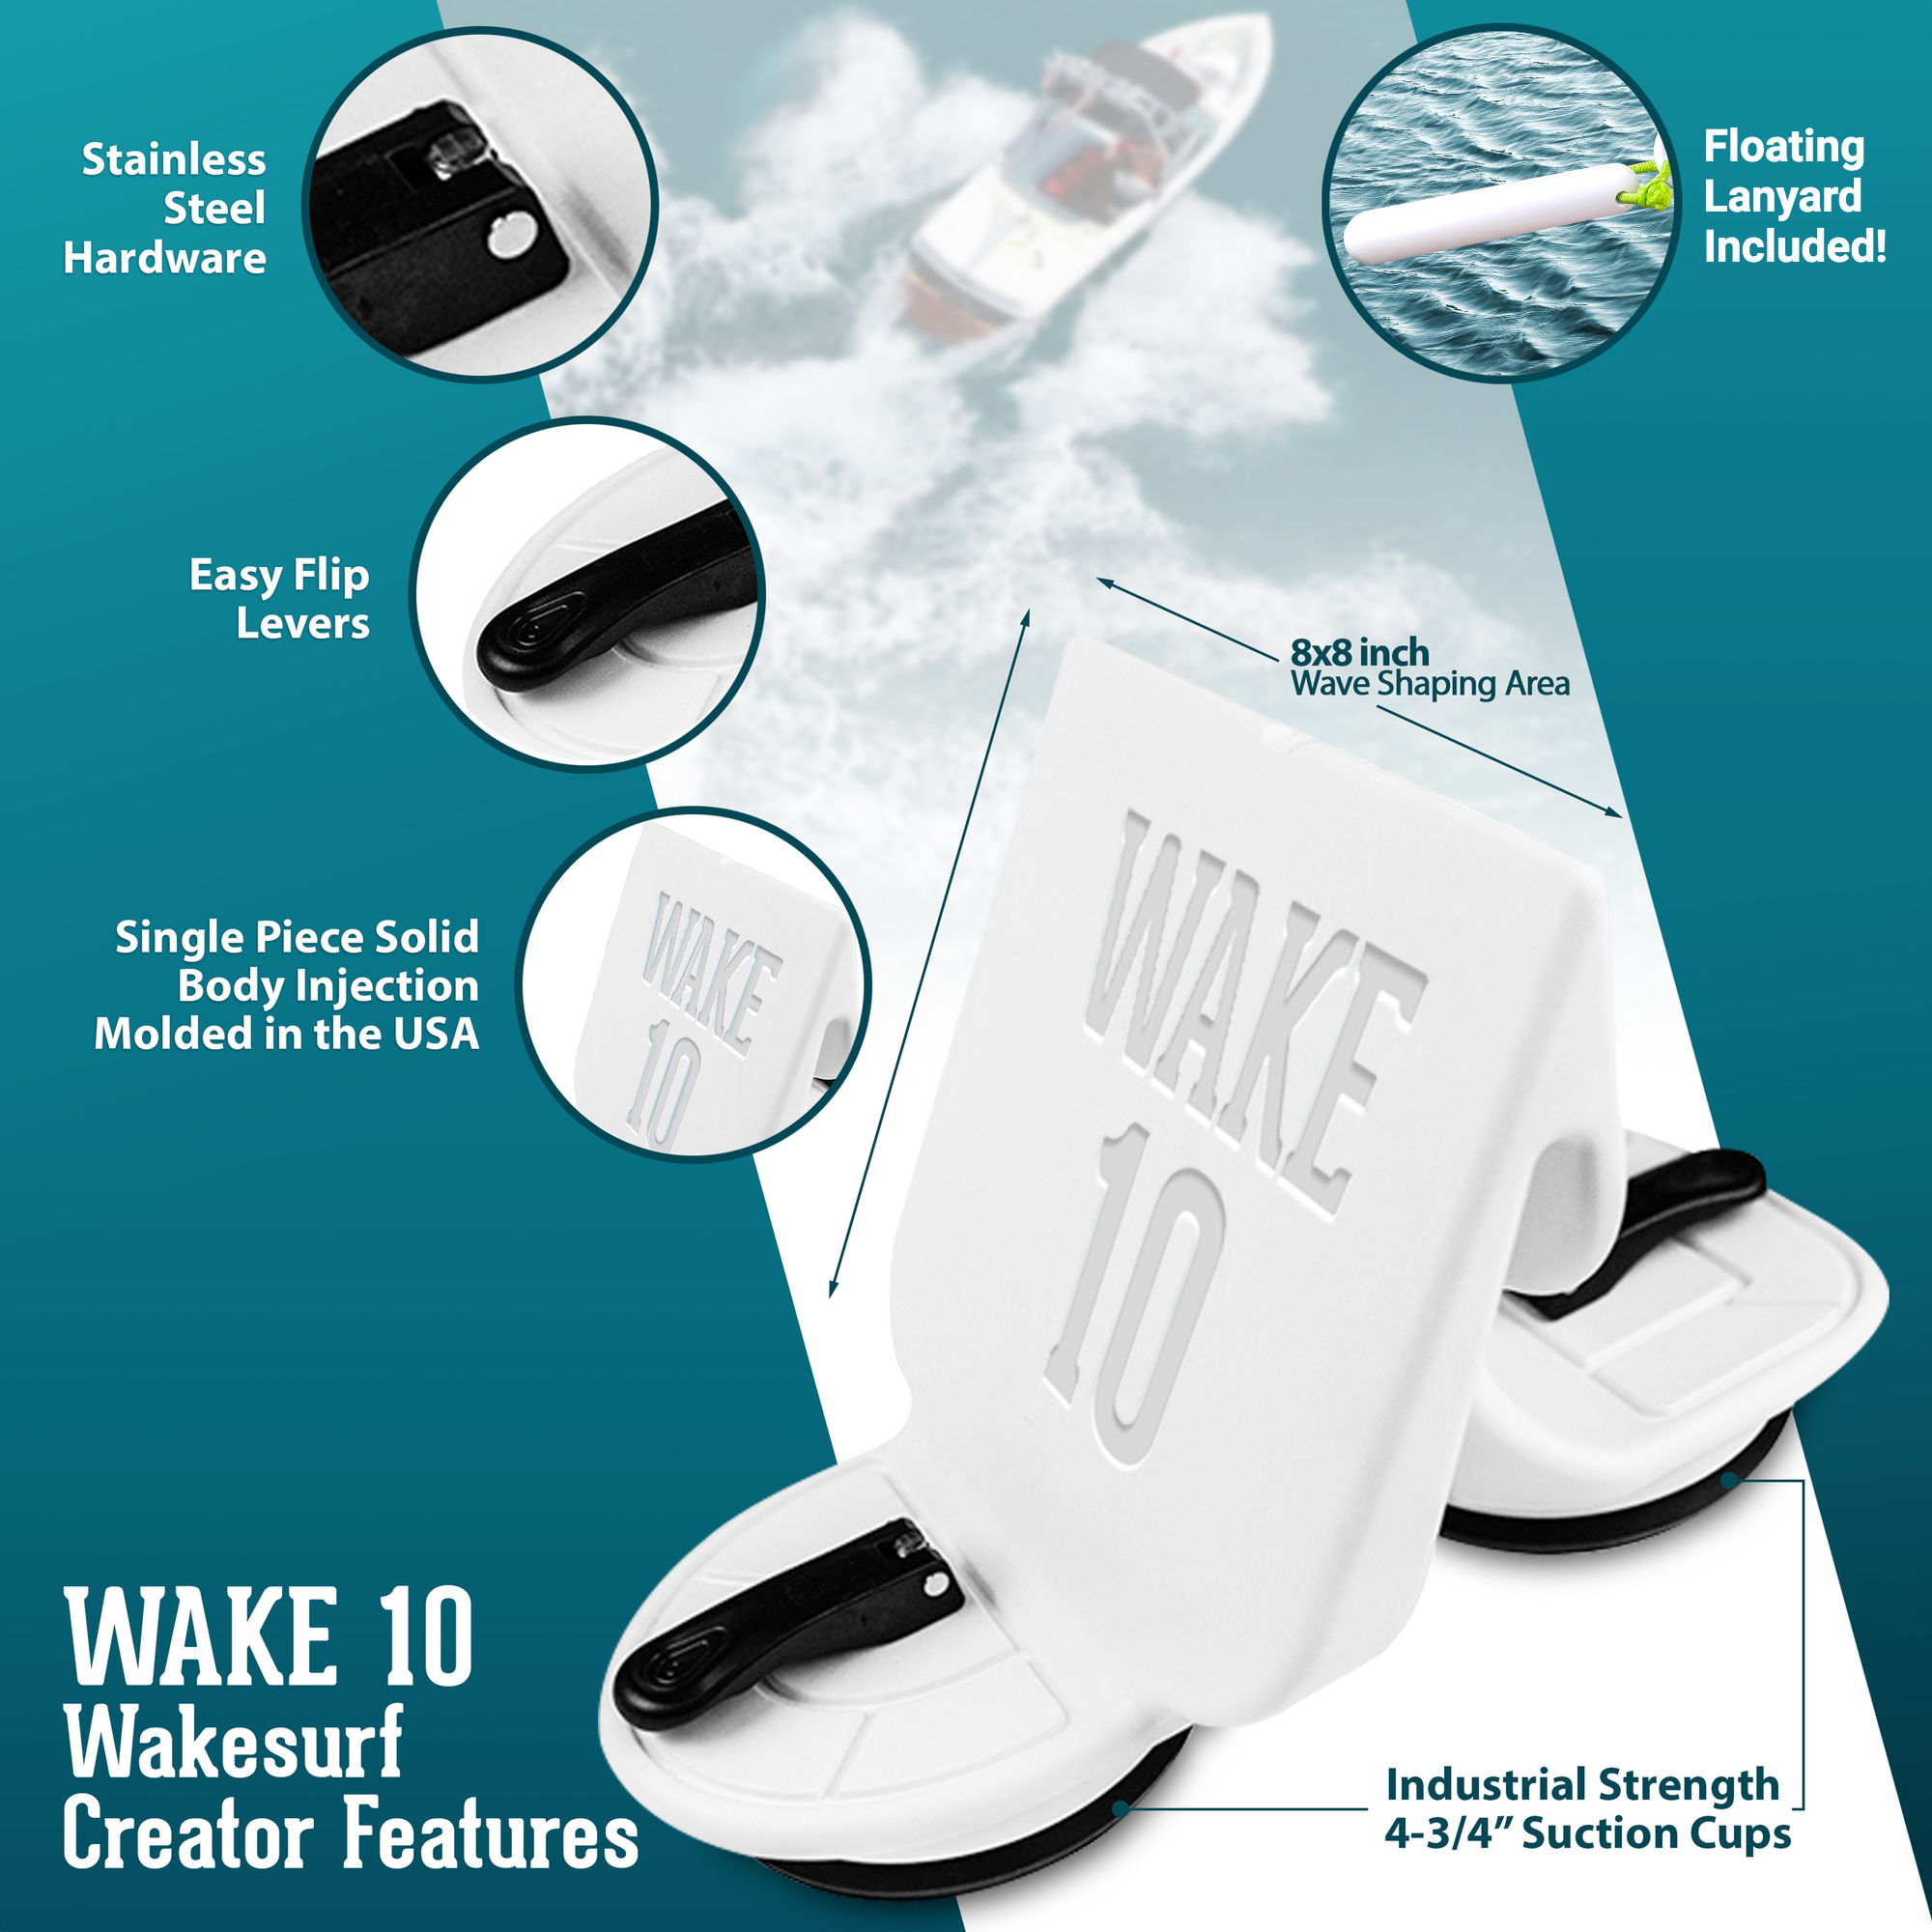 WAKE 10 Wakesurf Creator